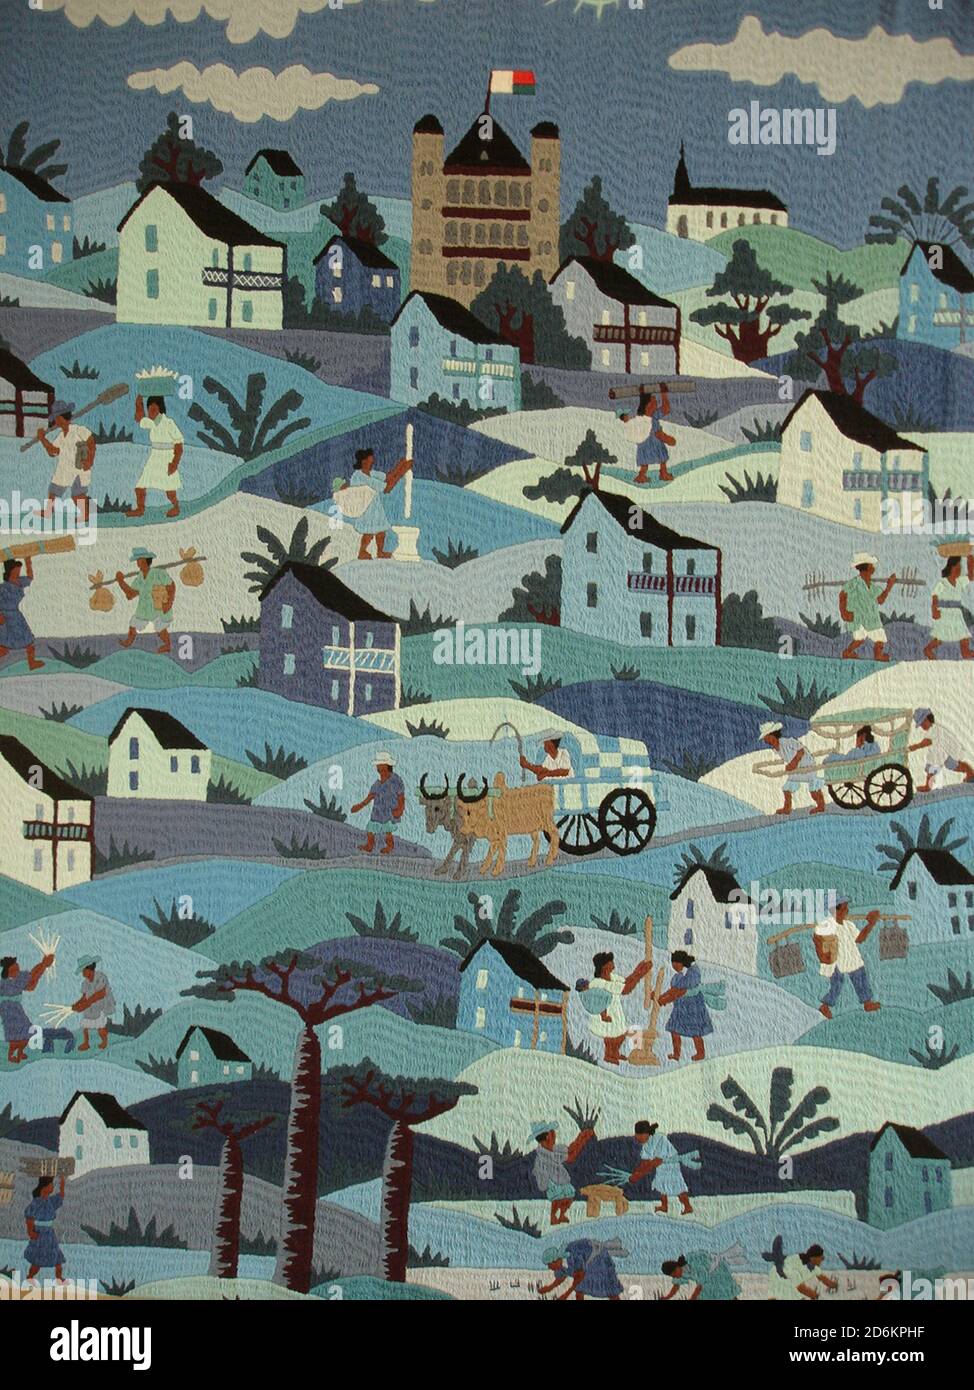 Das ländliche Leben in Madagaskar wurde in exquisiten Details auf einem gestickten Wandteppich gezeigt. Stockfoto